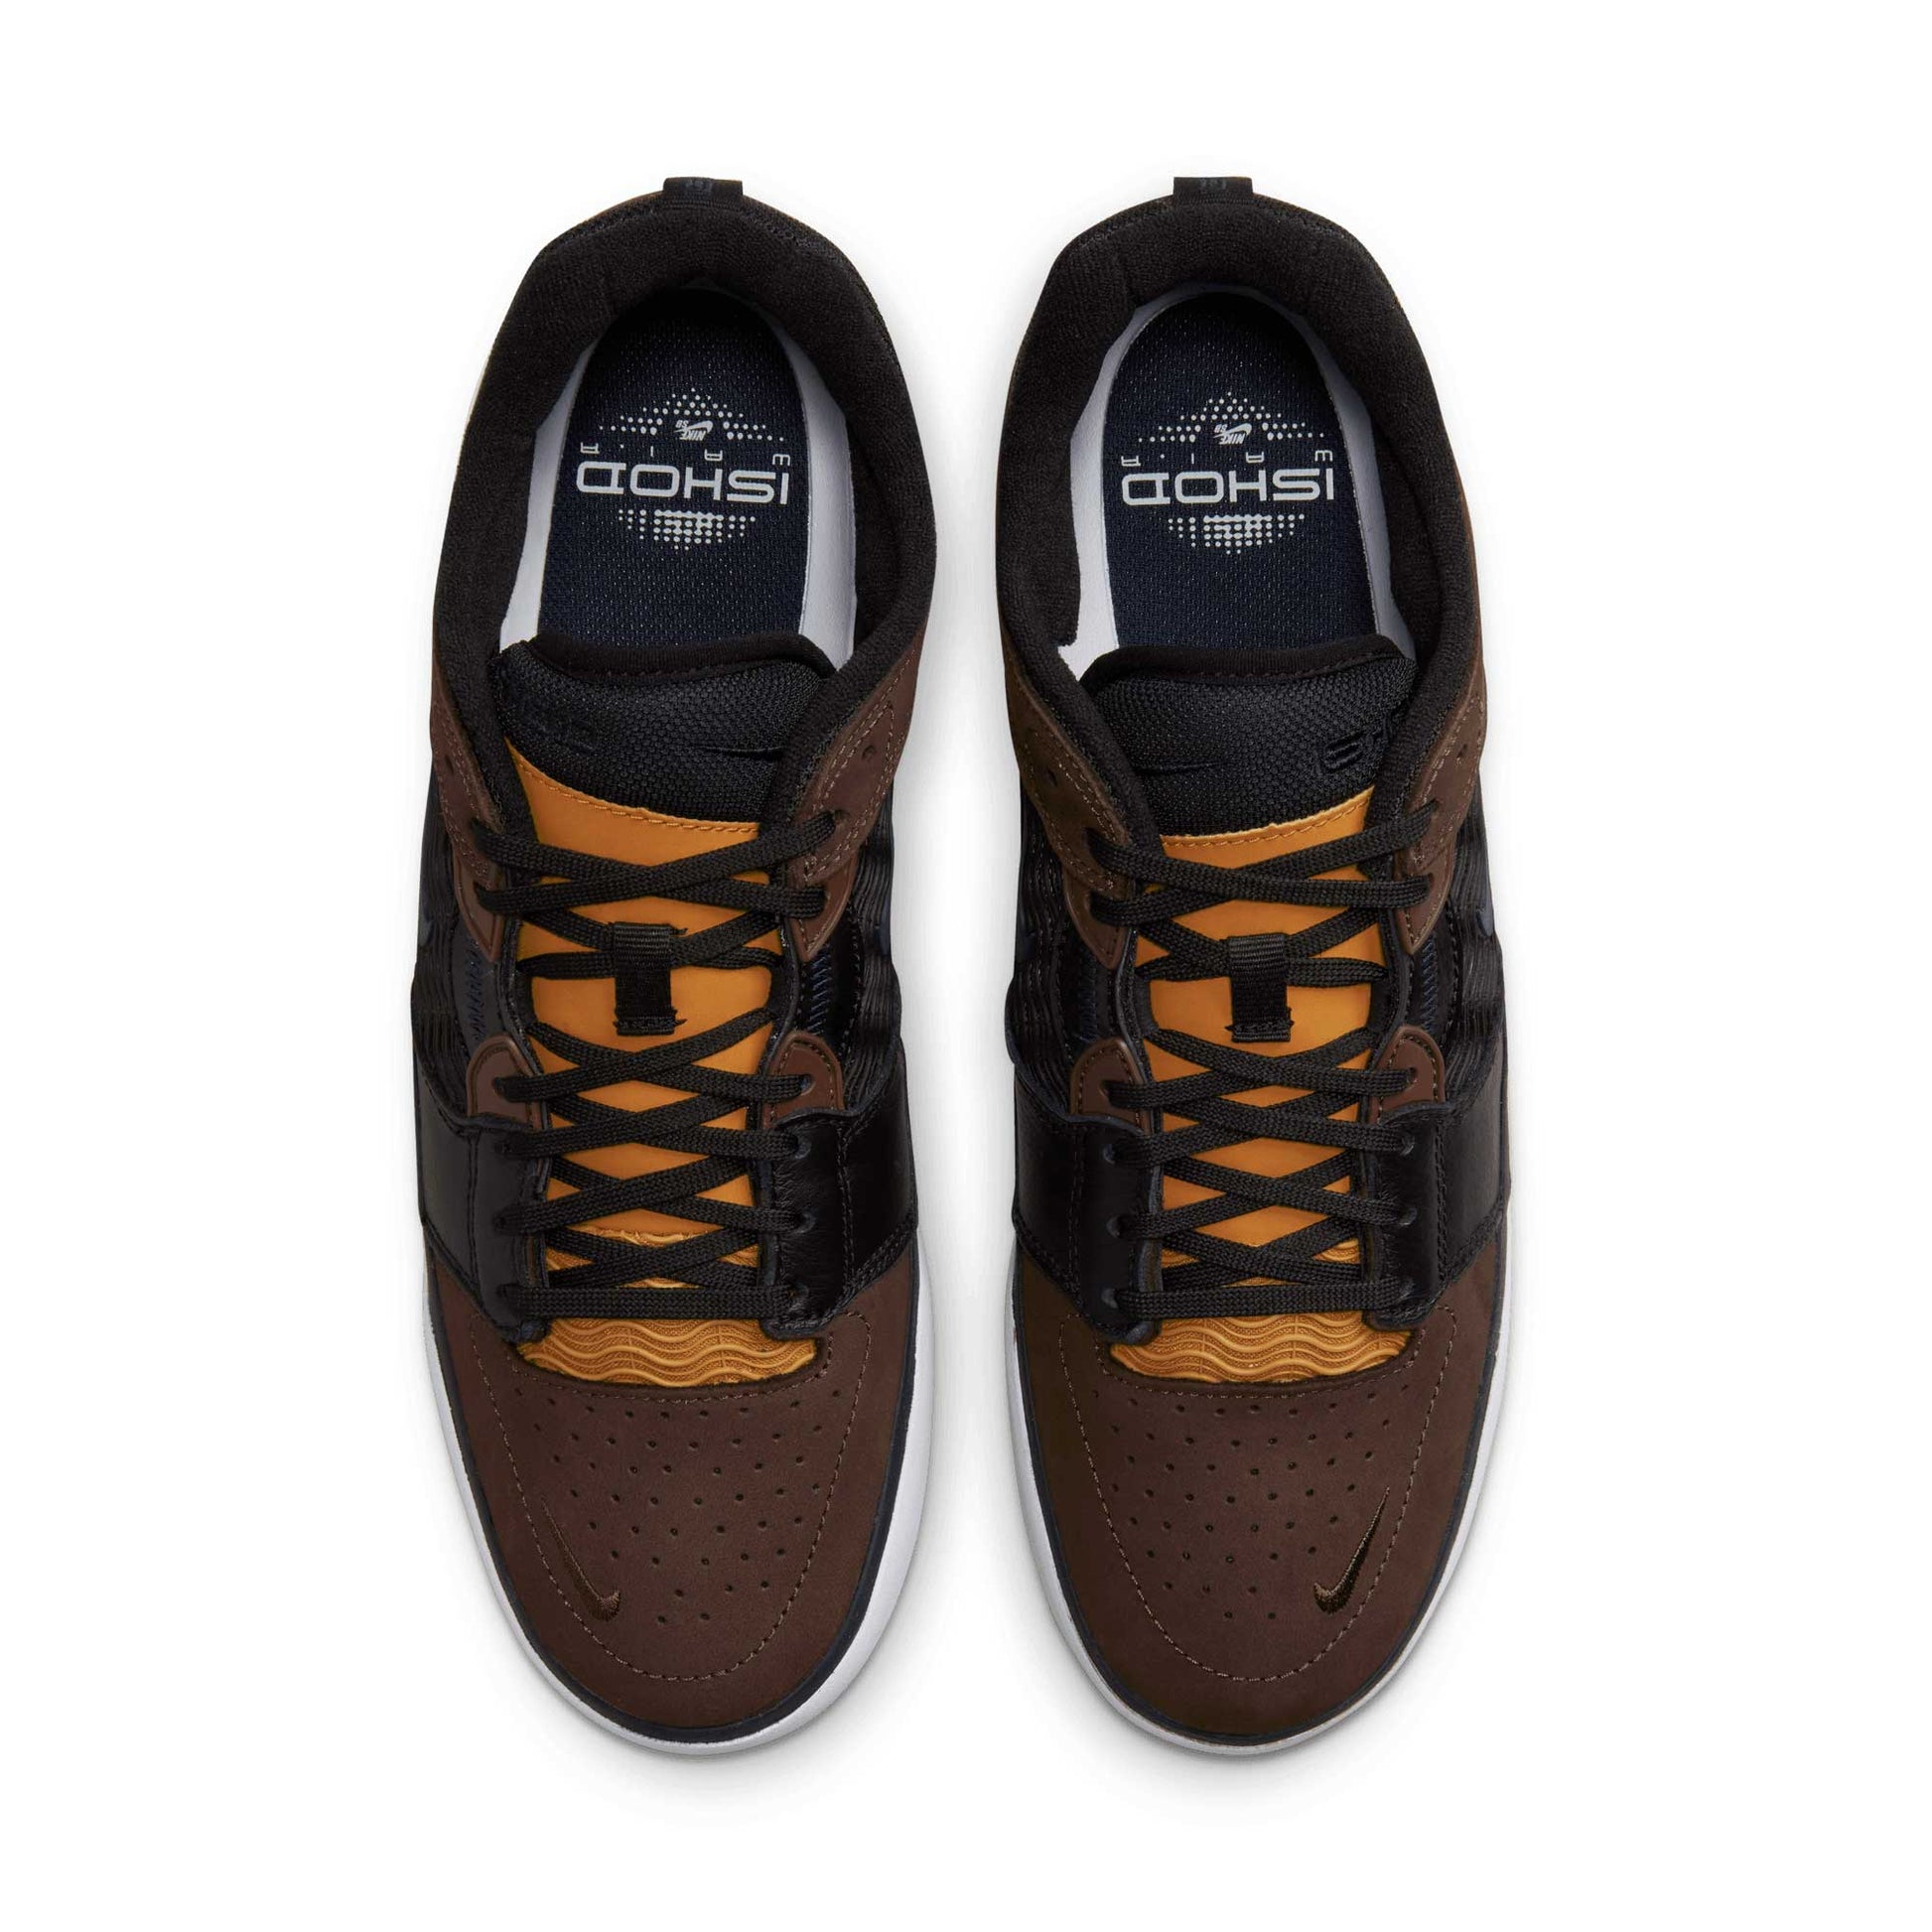 Nike SB Ishod Premium, baroque brown/obsidian-black - Tiki Room Skateboards - 3